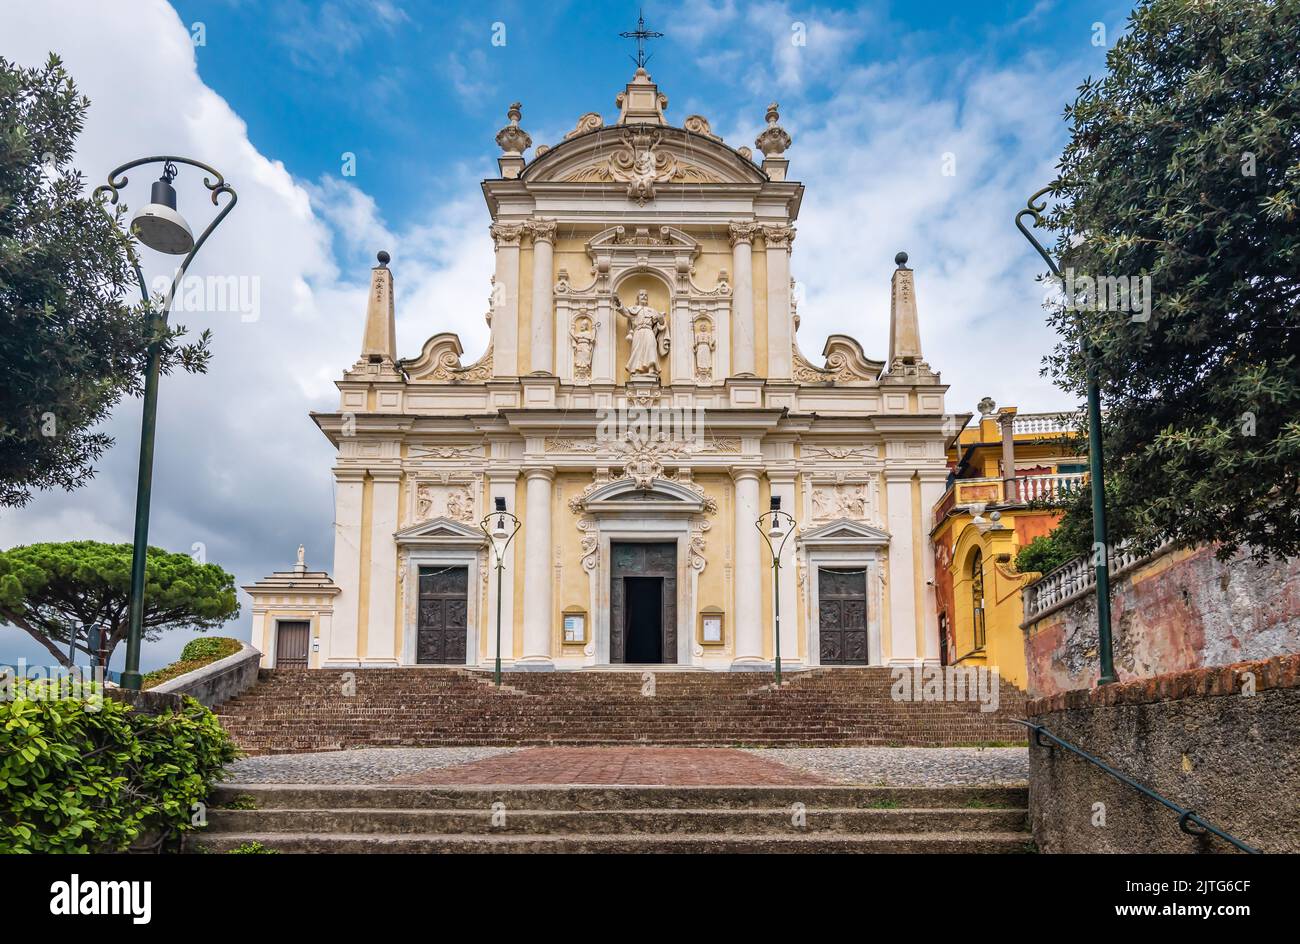 Baroque Church San Giacomo in Santa Margherita, Ligure, Italy. Stock Photo